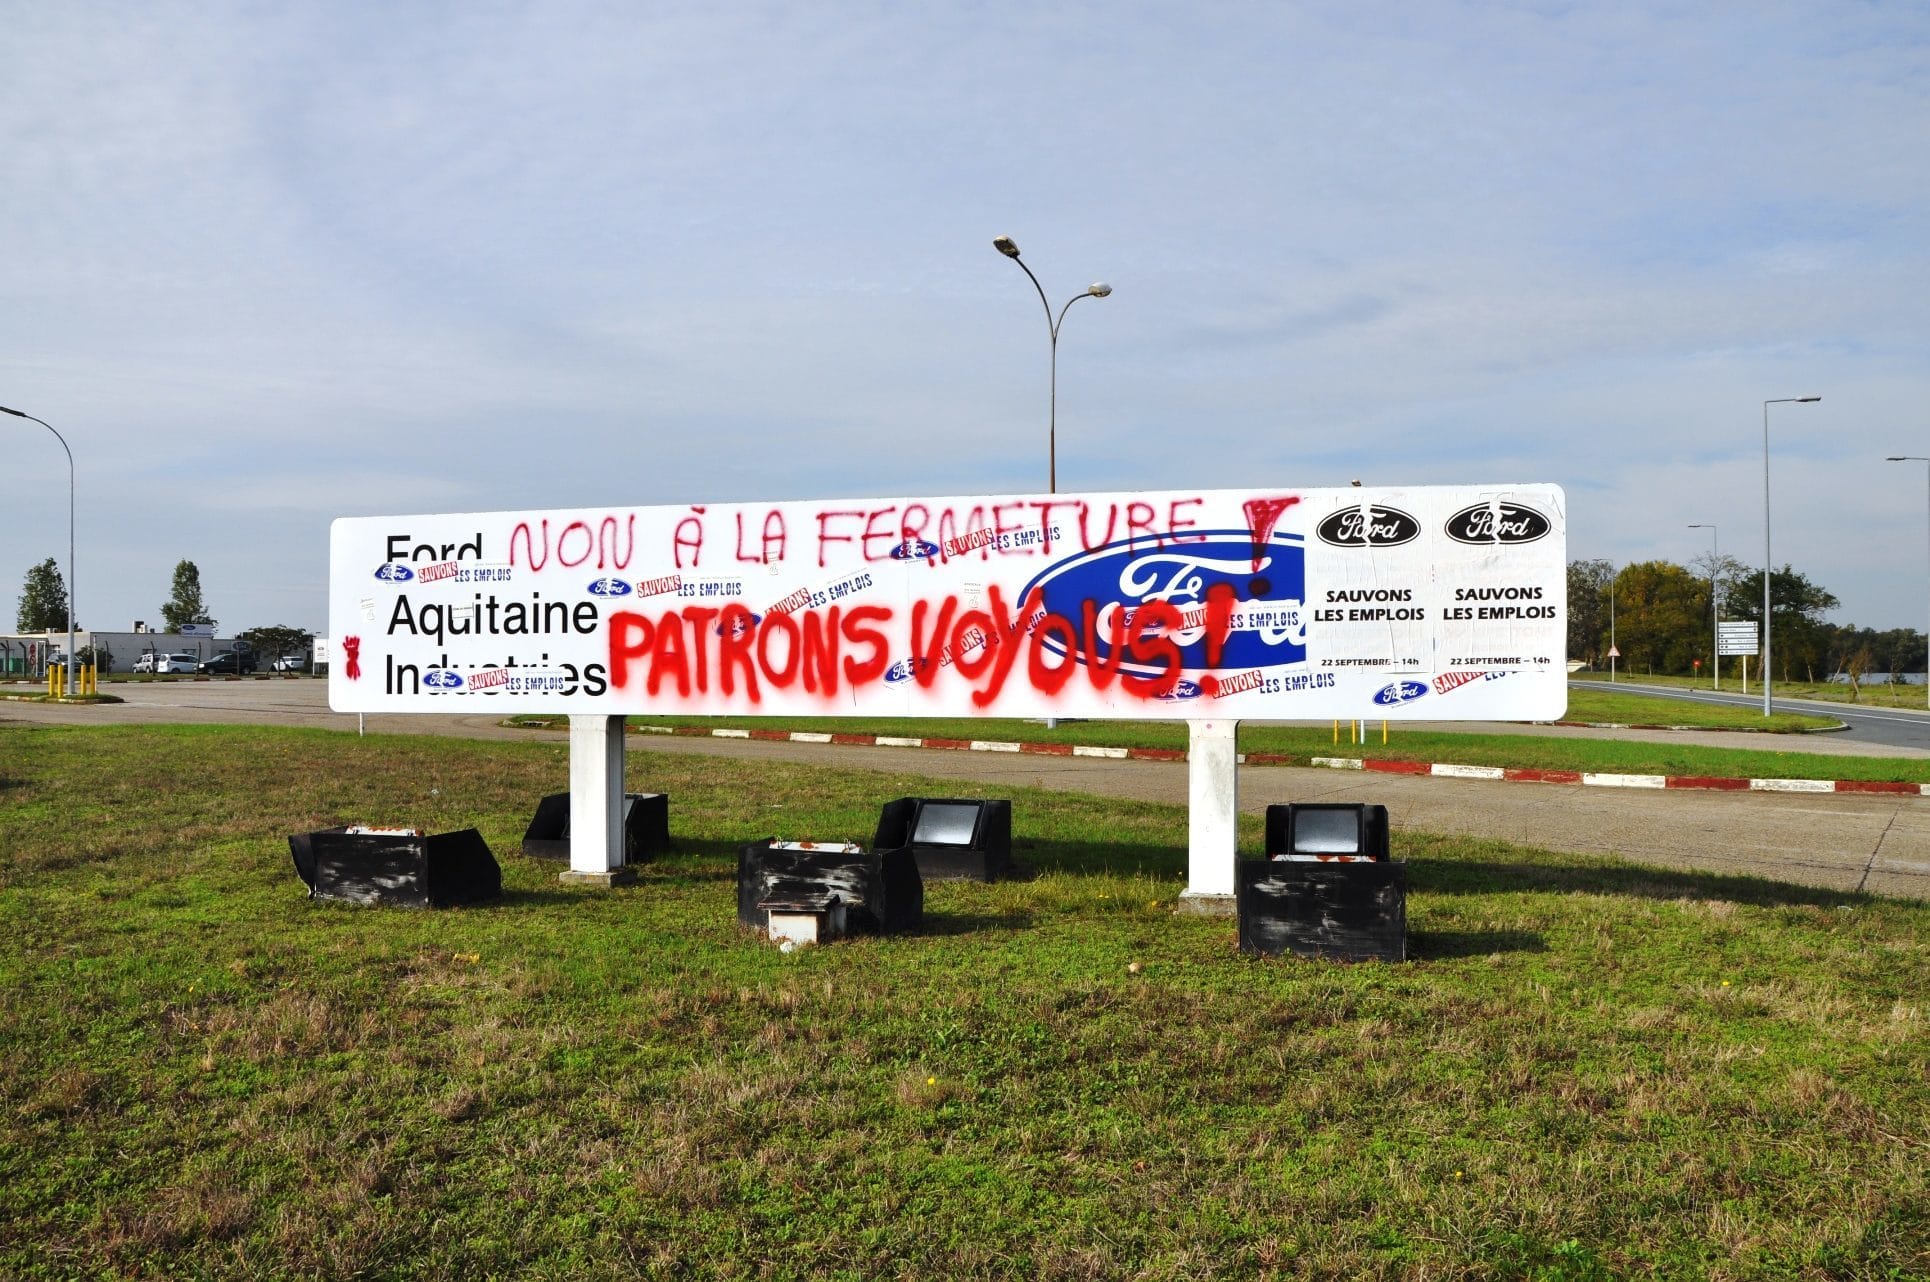 Ford Blanquefort et graffitis (Photo XR / Rue89 Bordeaux)